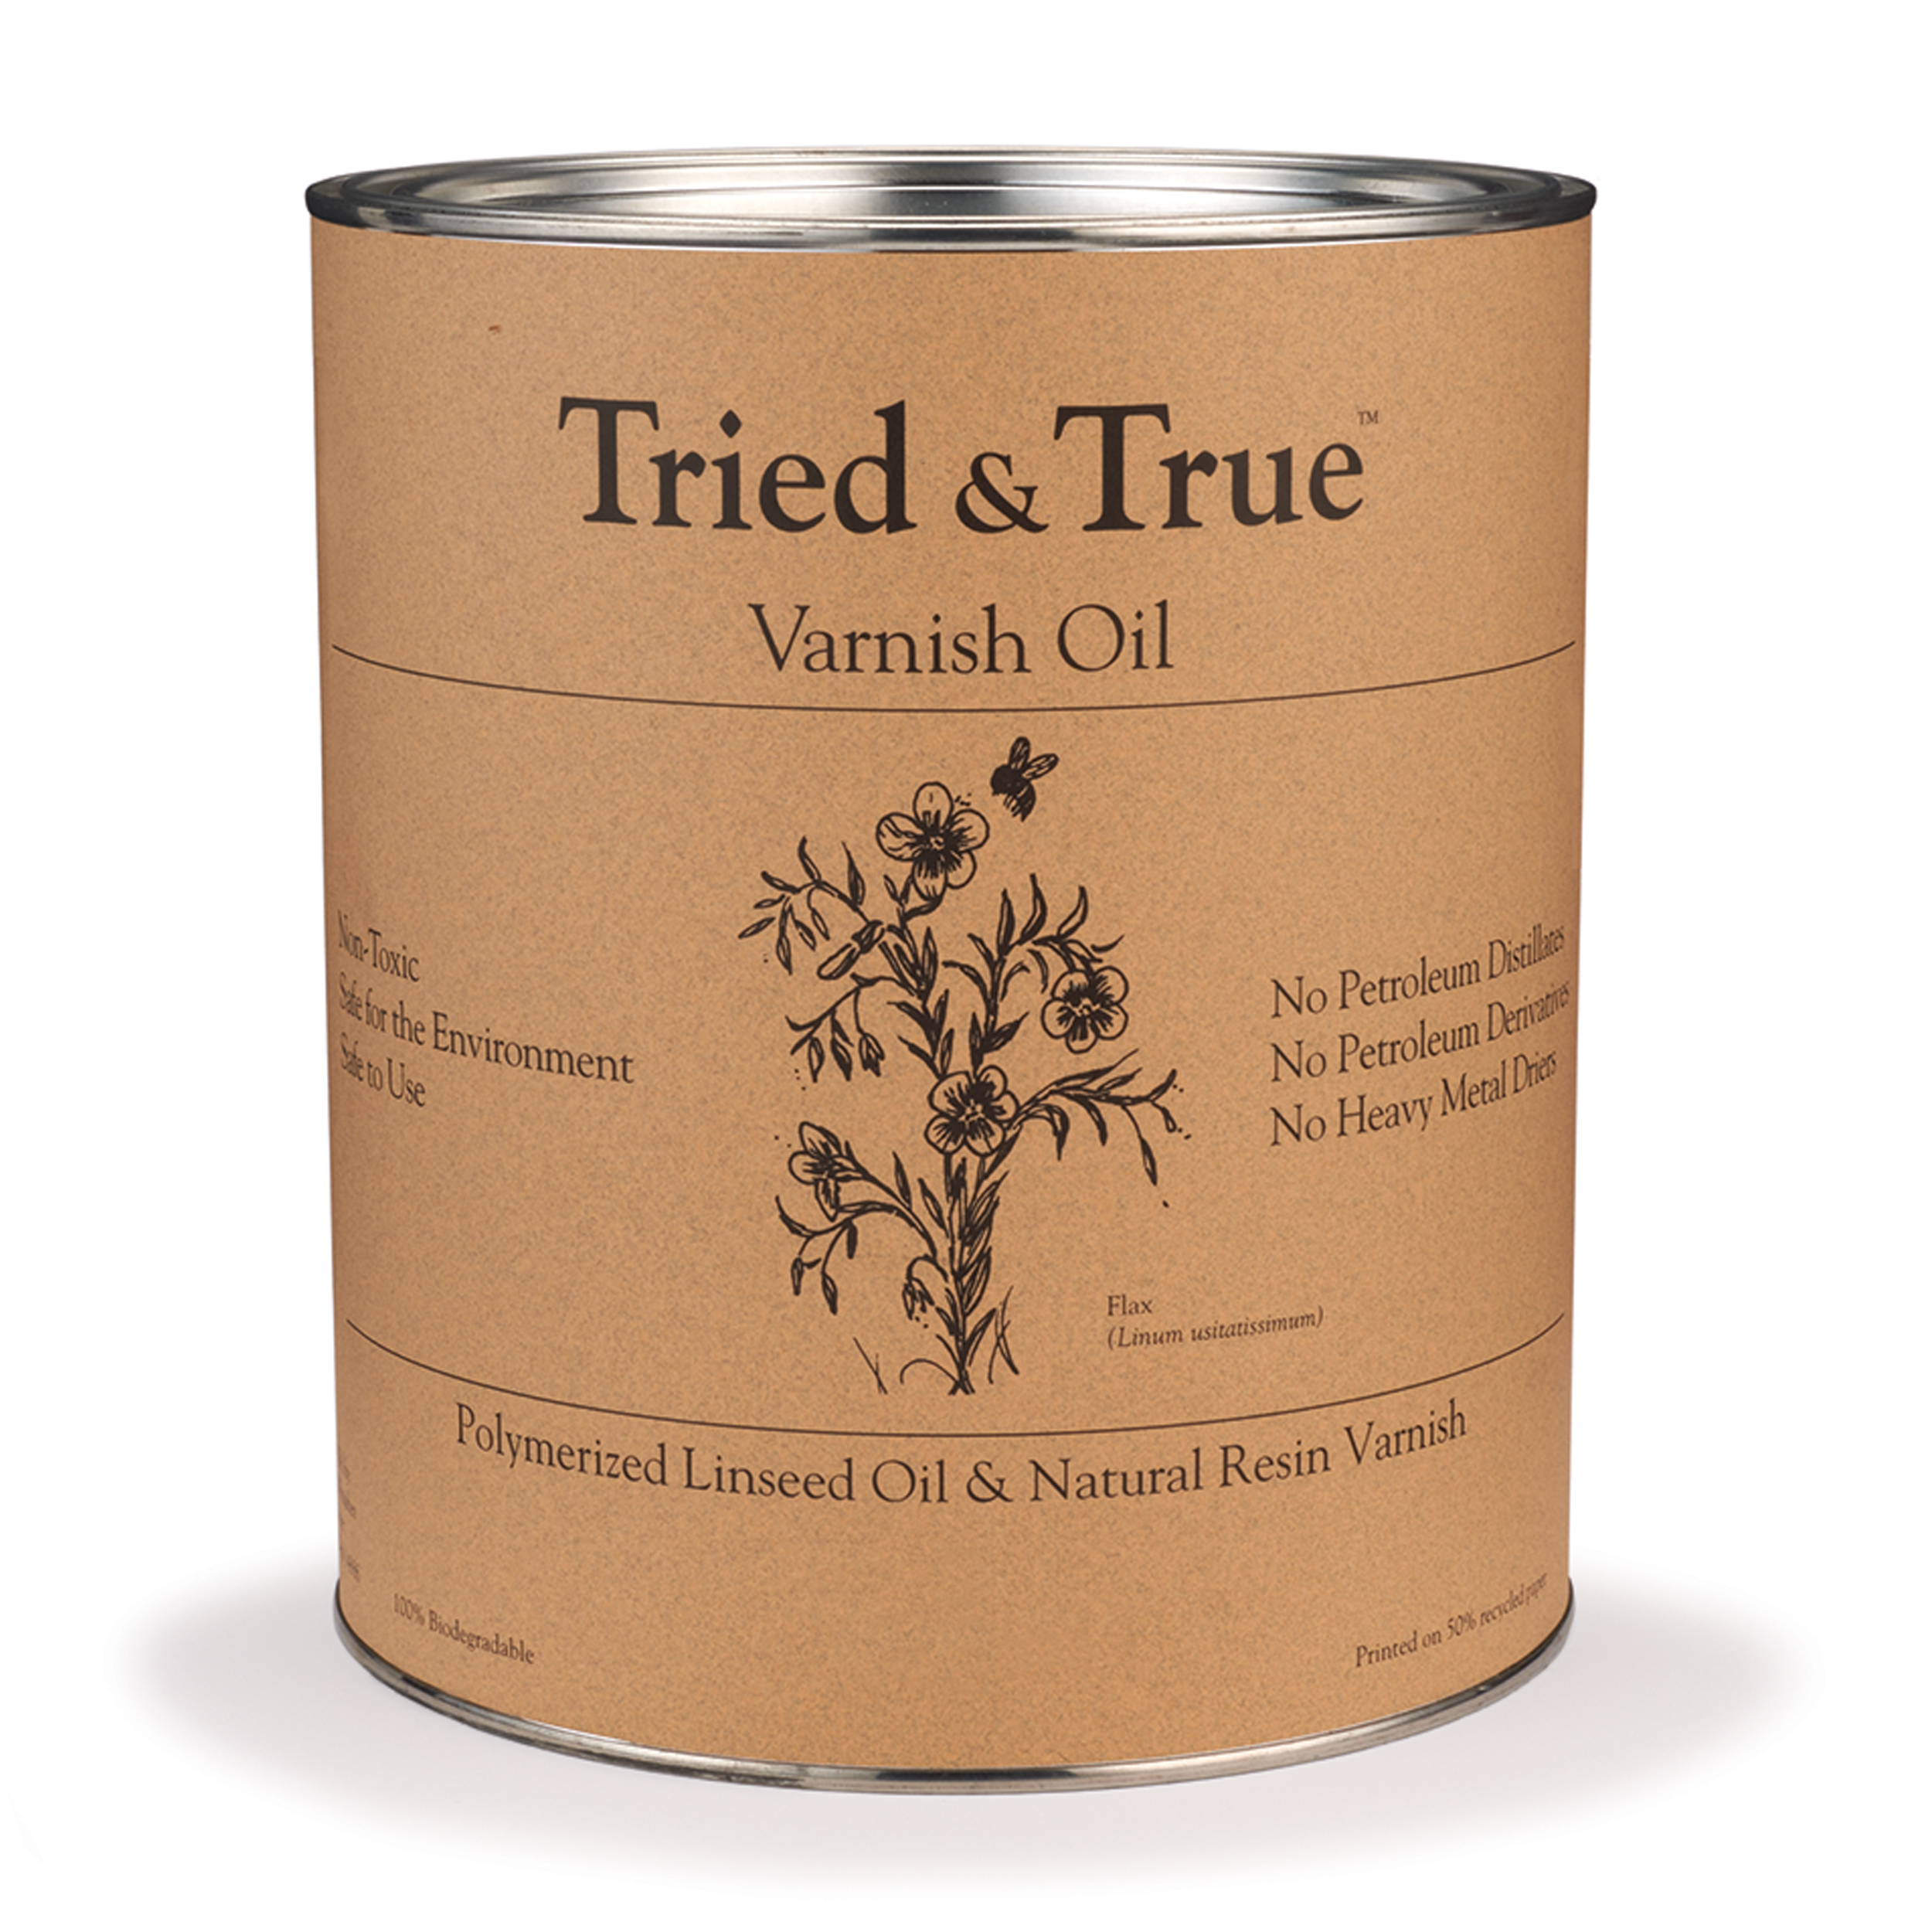 Tried & True Varnish Oil, Pint